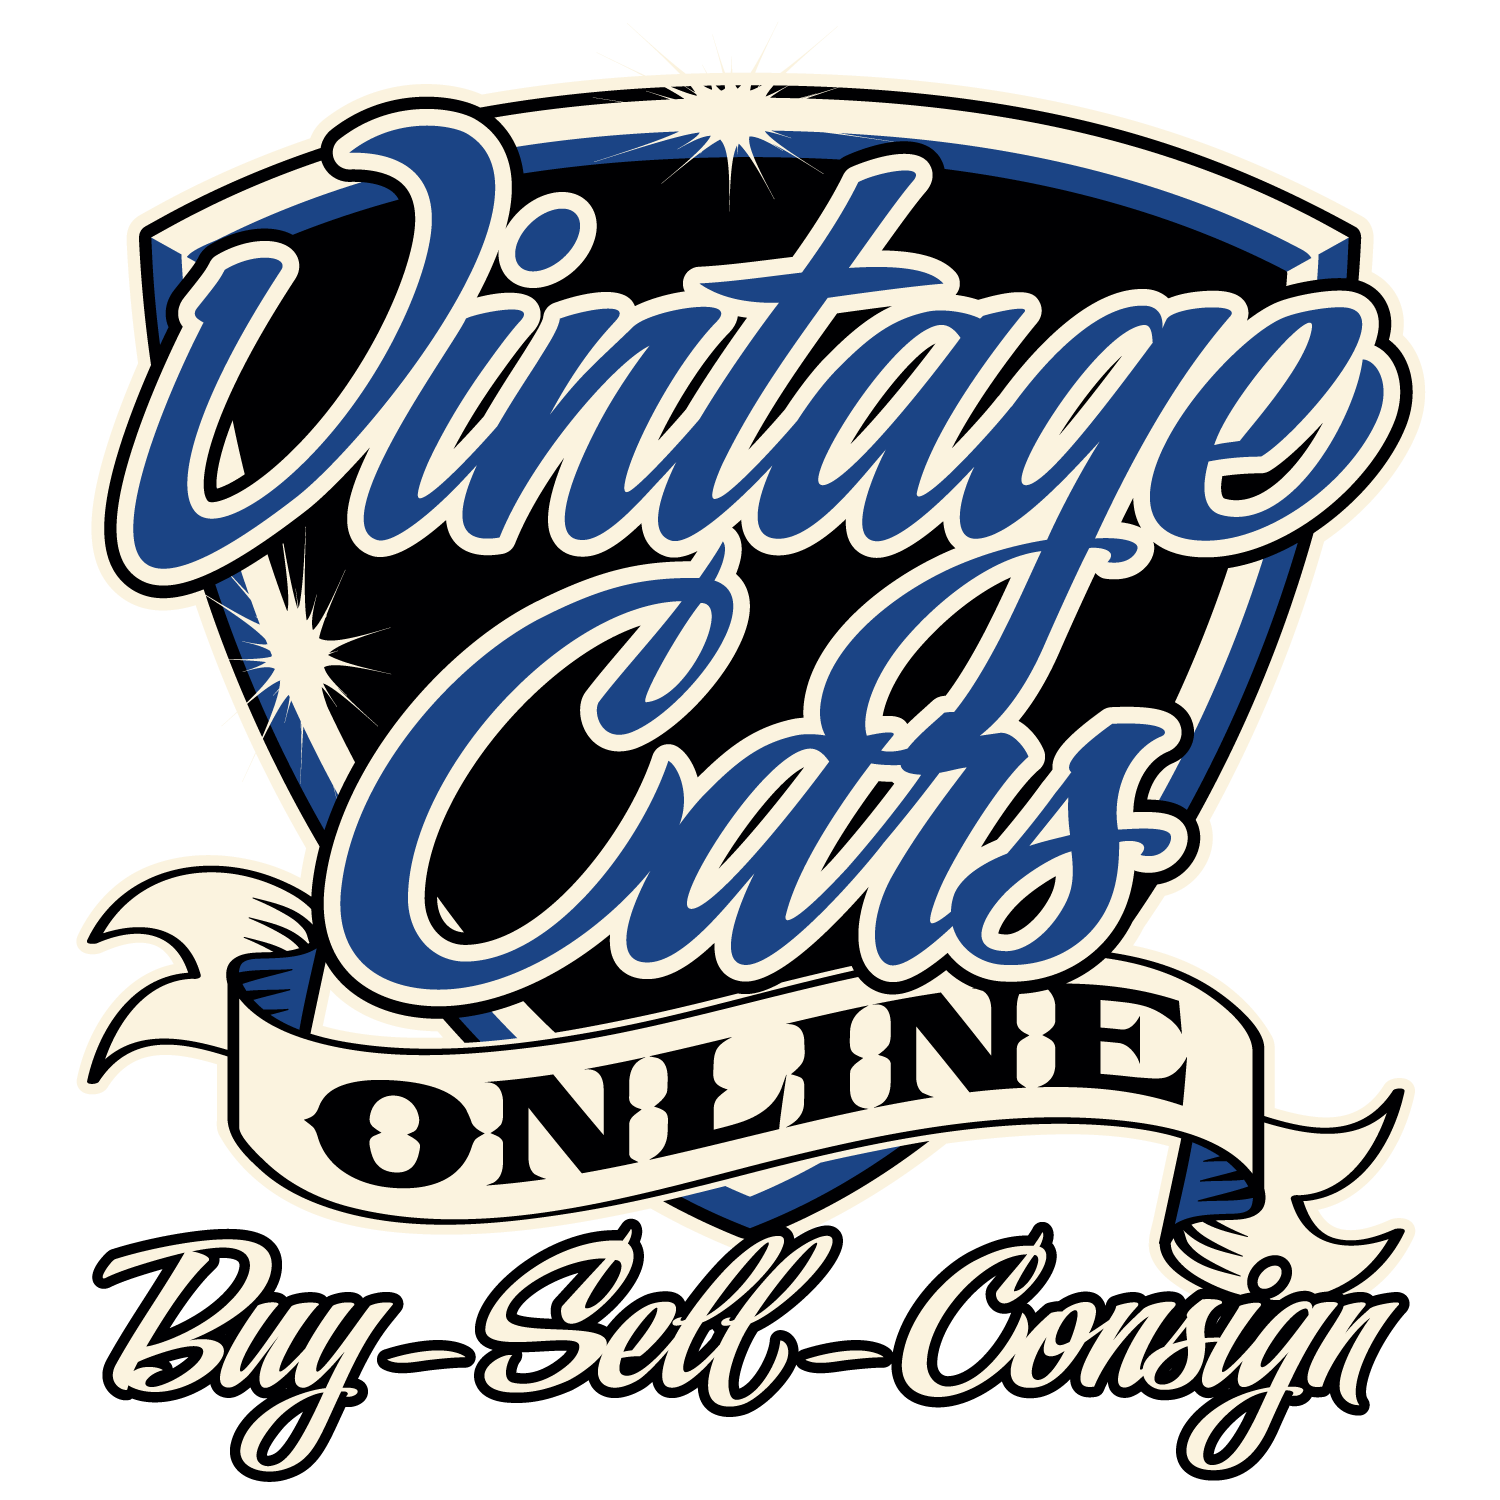 Vintage Cars Online, LLC.